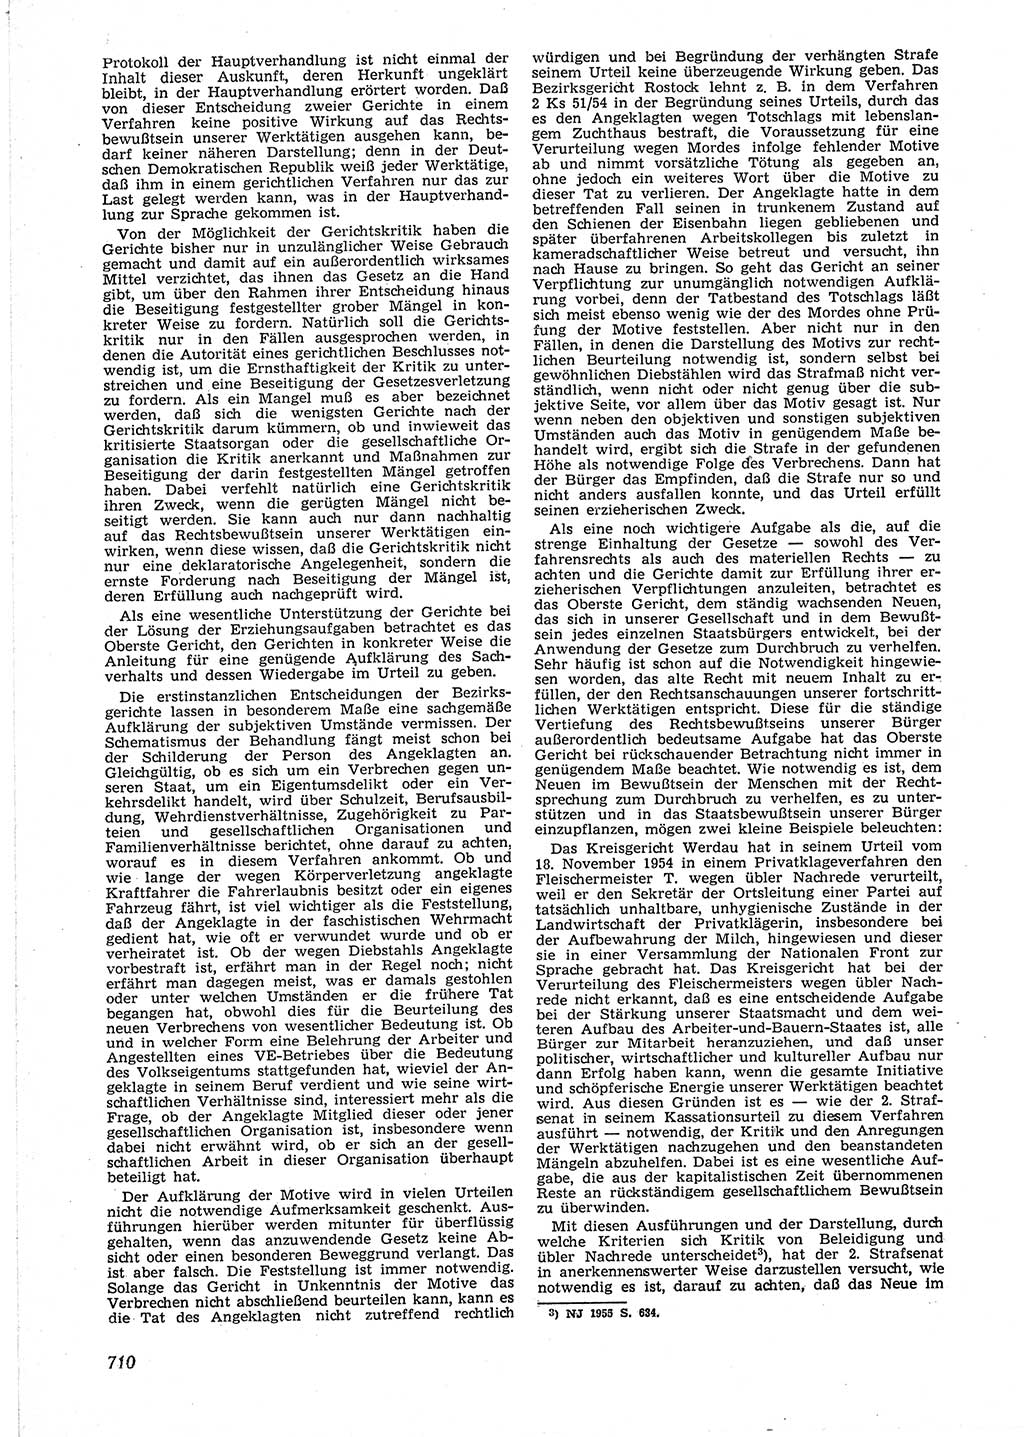 Neue Justiz (NJ), Zeitschrift für Recht und Rechtswissenschaft [Deutsche Demokratische Republik (DDR)], 9. Jahrgang 1955, Seite 710 (NJ DDR 1955, S. 710)